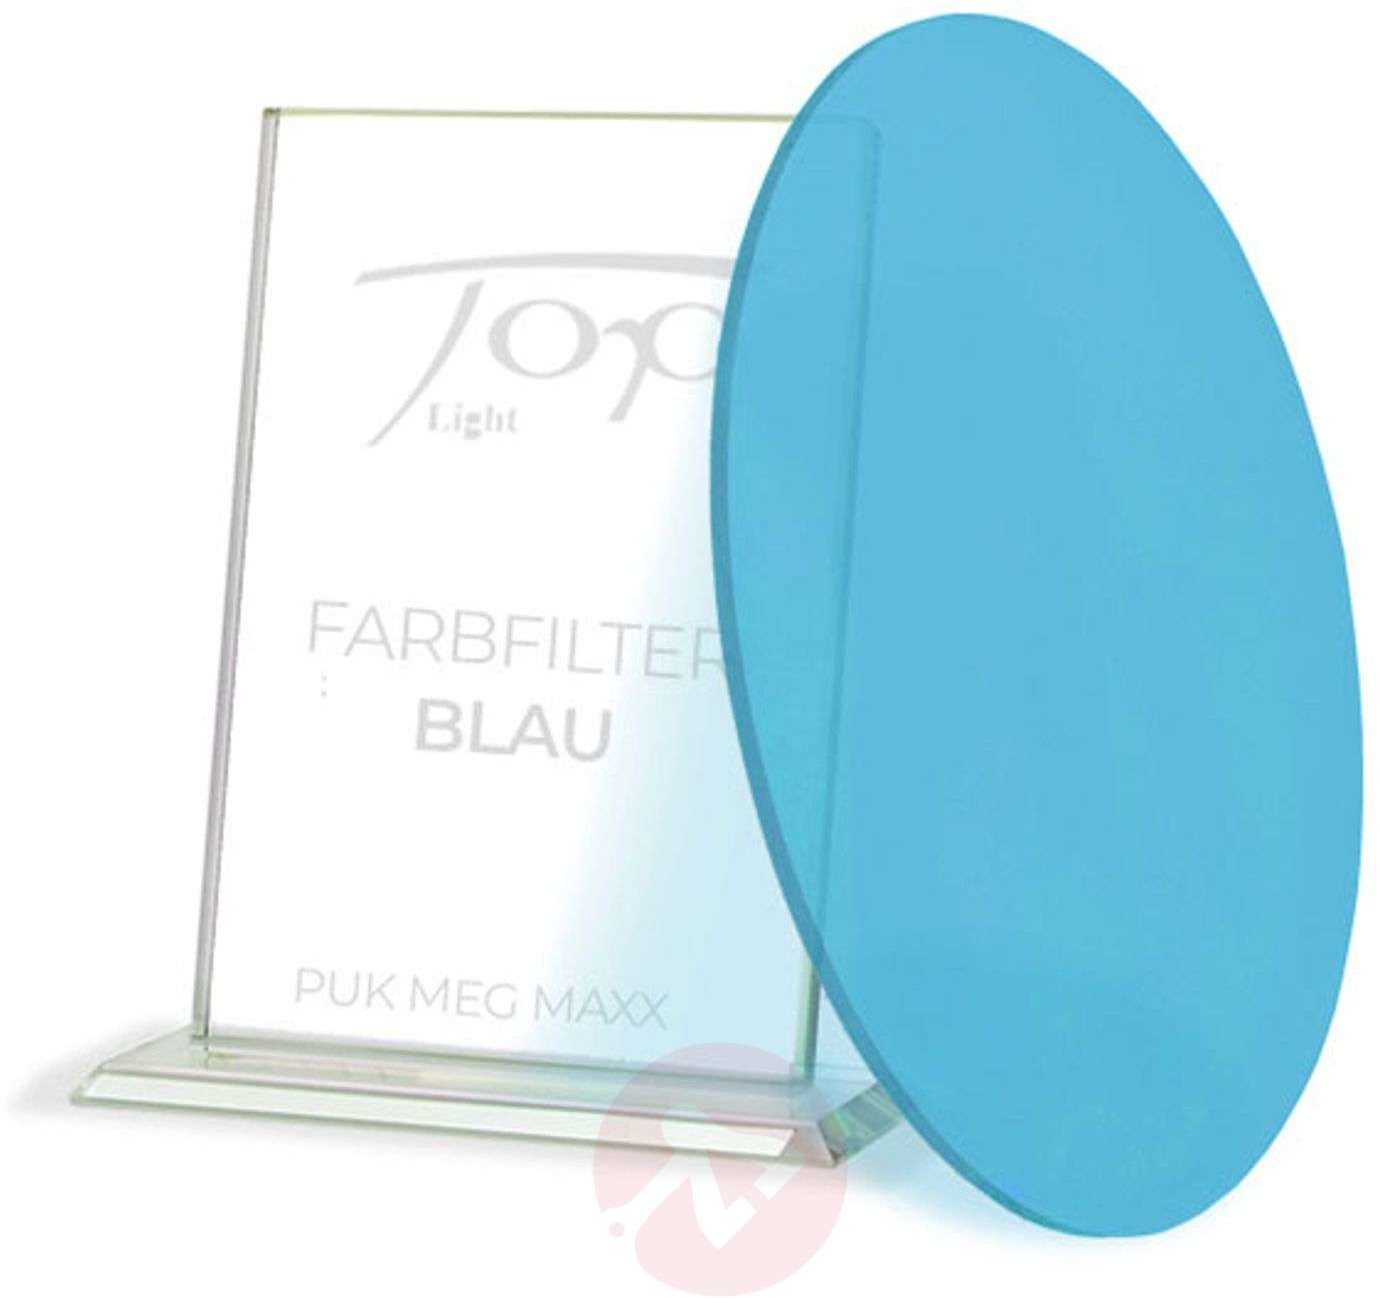 Top Light Filtr barwny dla lamp serii Puk Meg Maxx niebieski